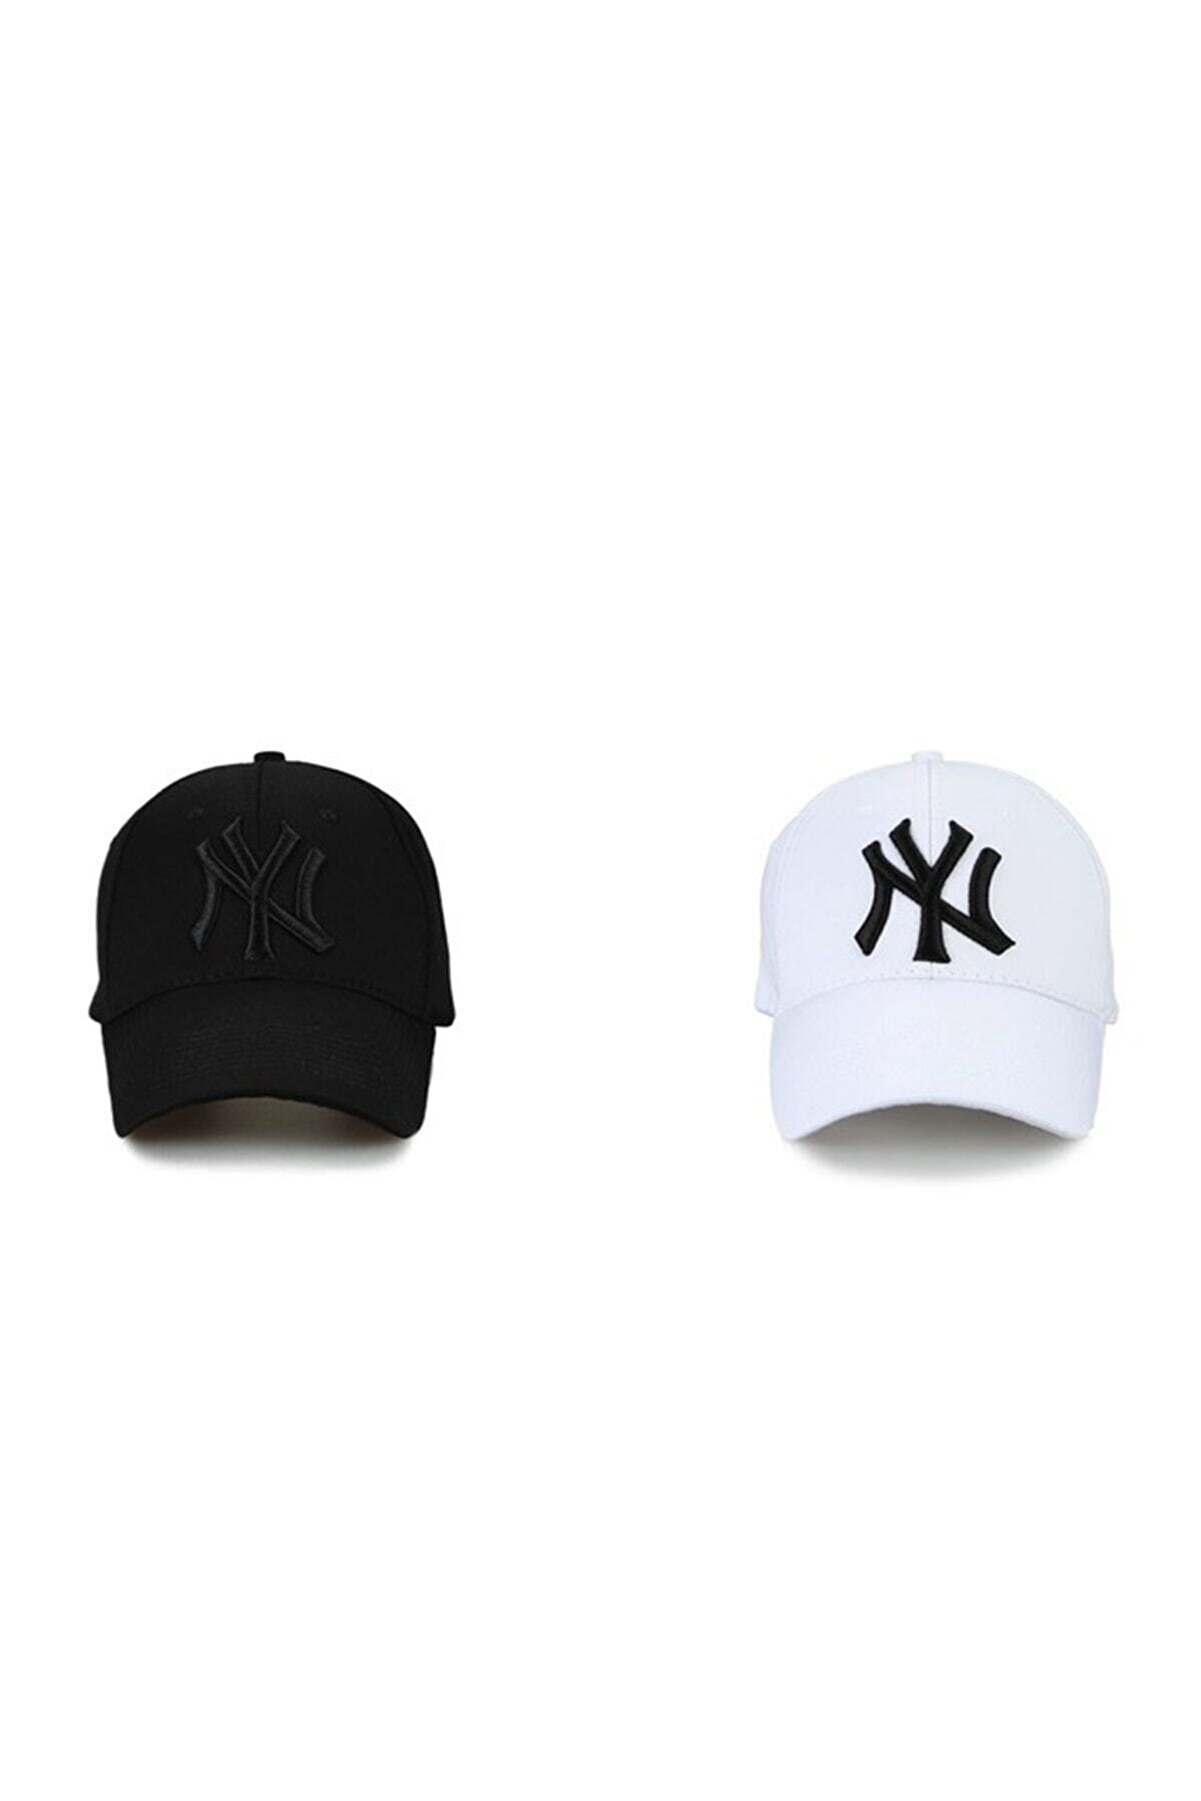 İdeal Ideal Ny New York 2'li Unisex Set Şapka [siyah-beyaz]